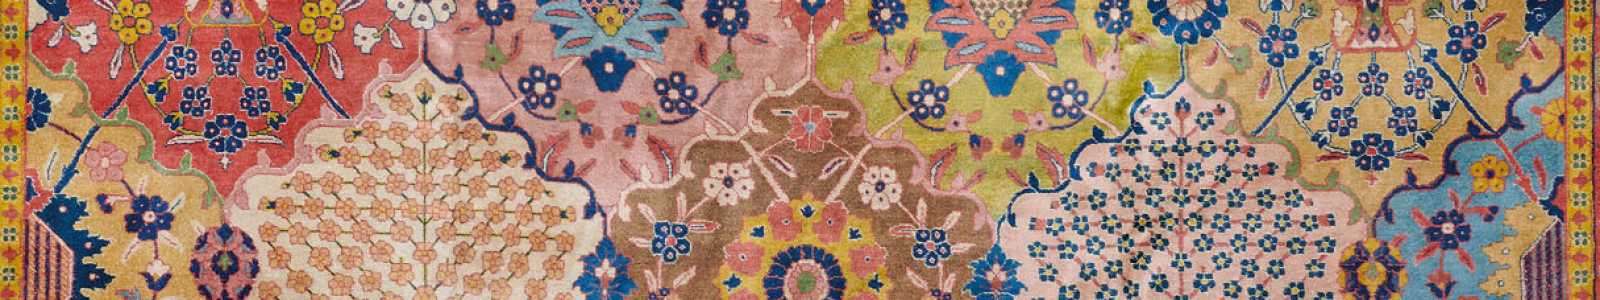 Искусство исламского и индийского миров, включая восточные ковры и ковры